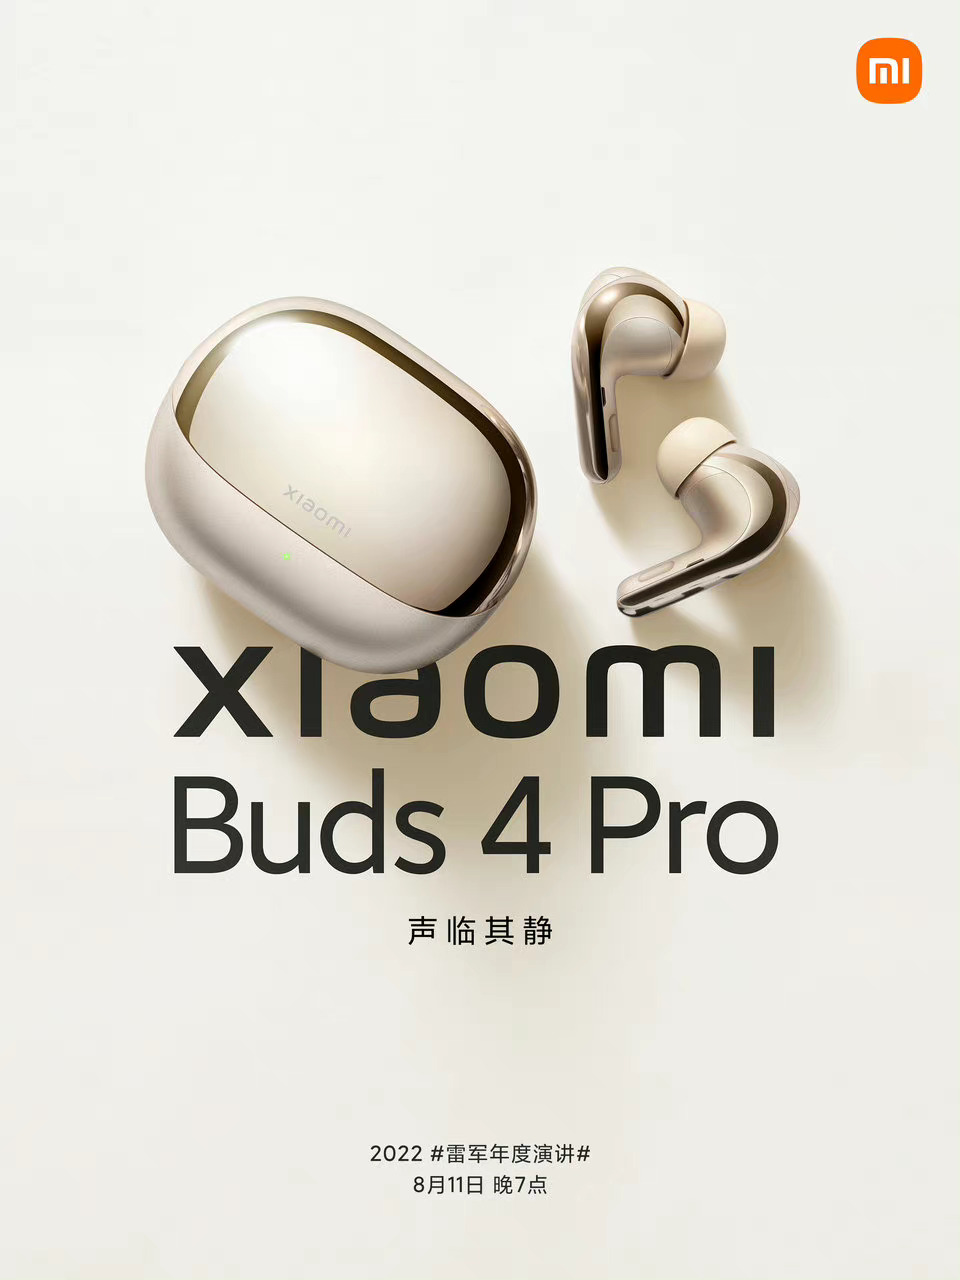 پوستر رسمی Xiaomi Buds 4 Pro